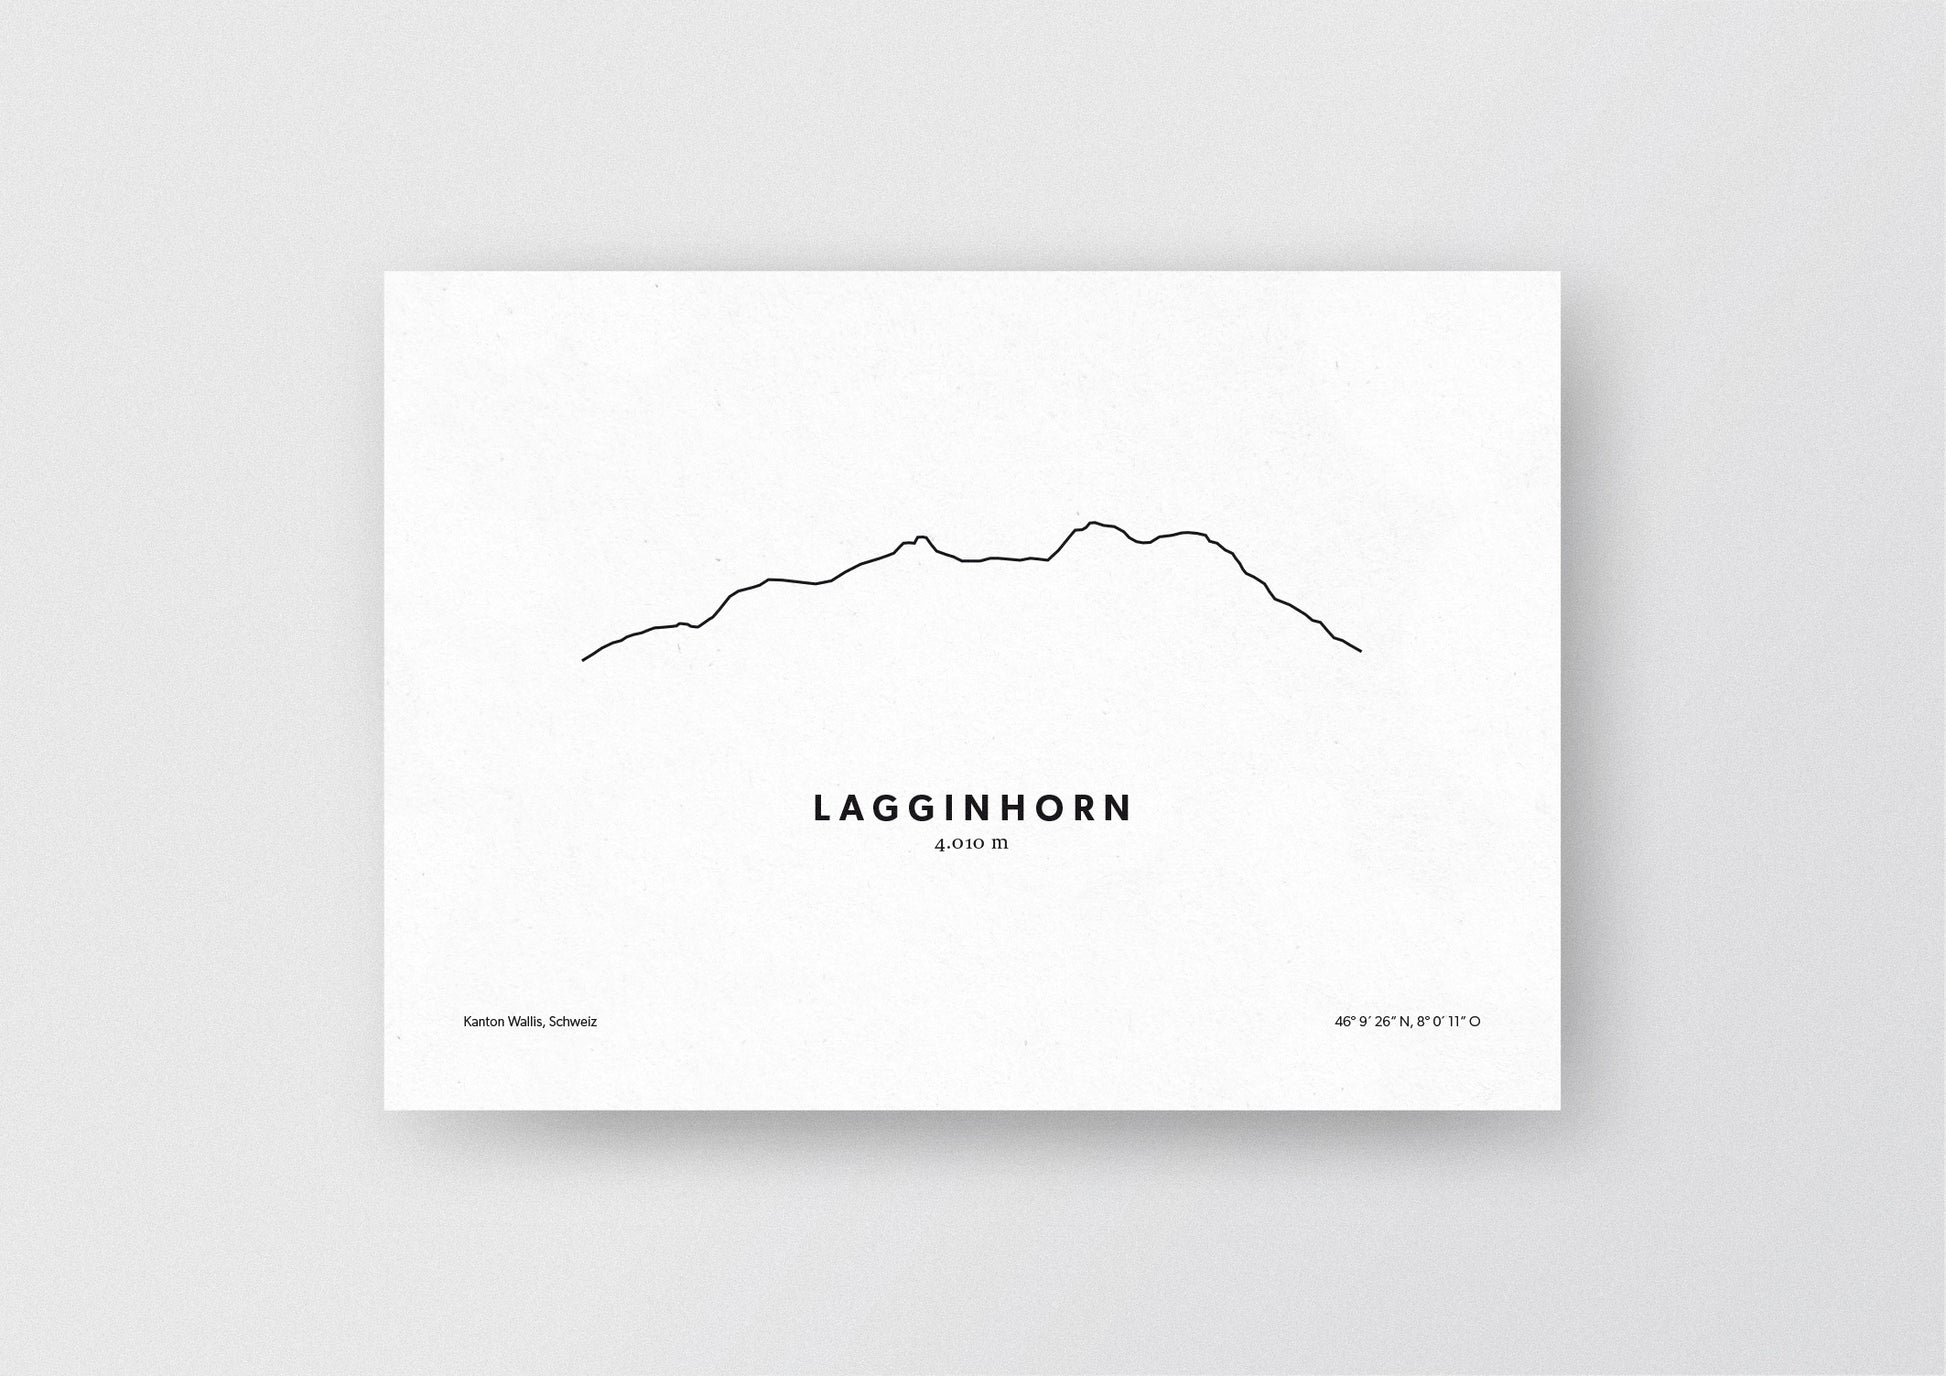 Minimalistische Illustration des Lagginhorn in den Walliser Alpen, als stilvoller Einrichtungsgegenstand für Zuhause.